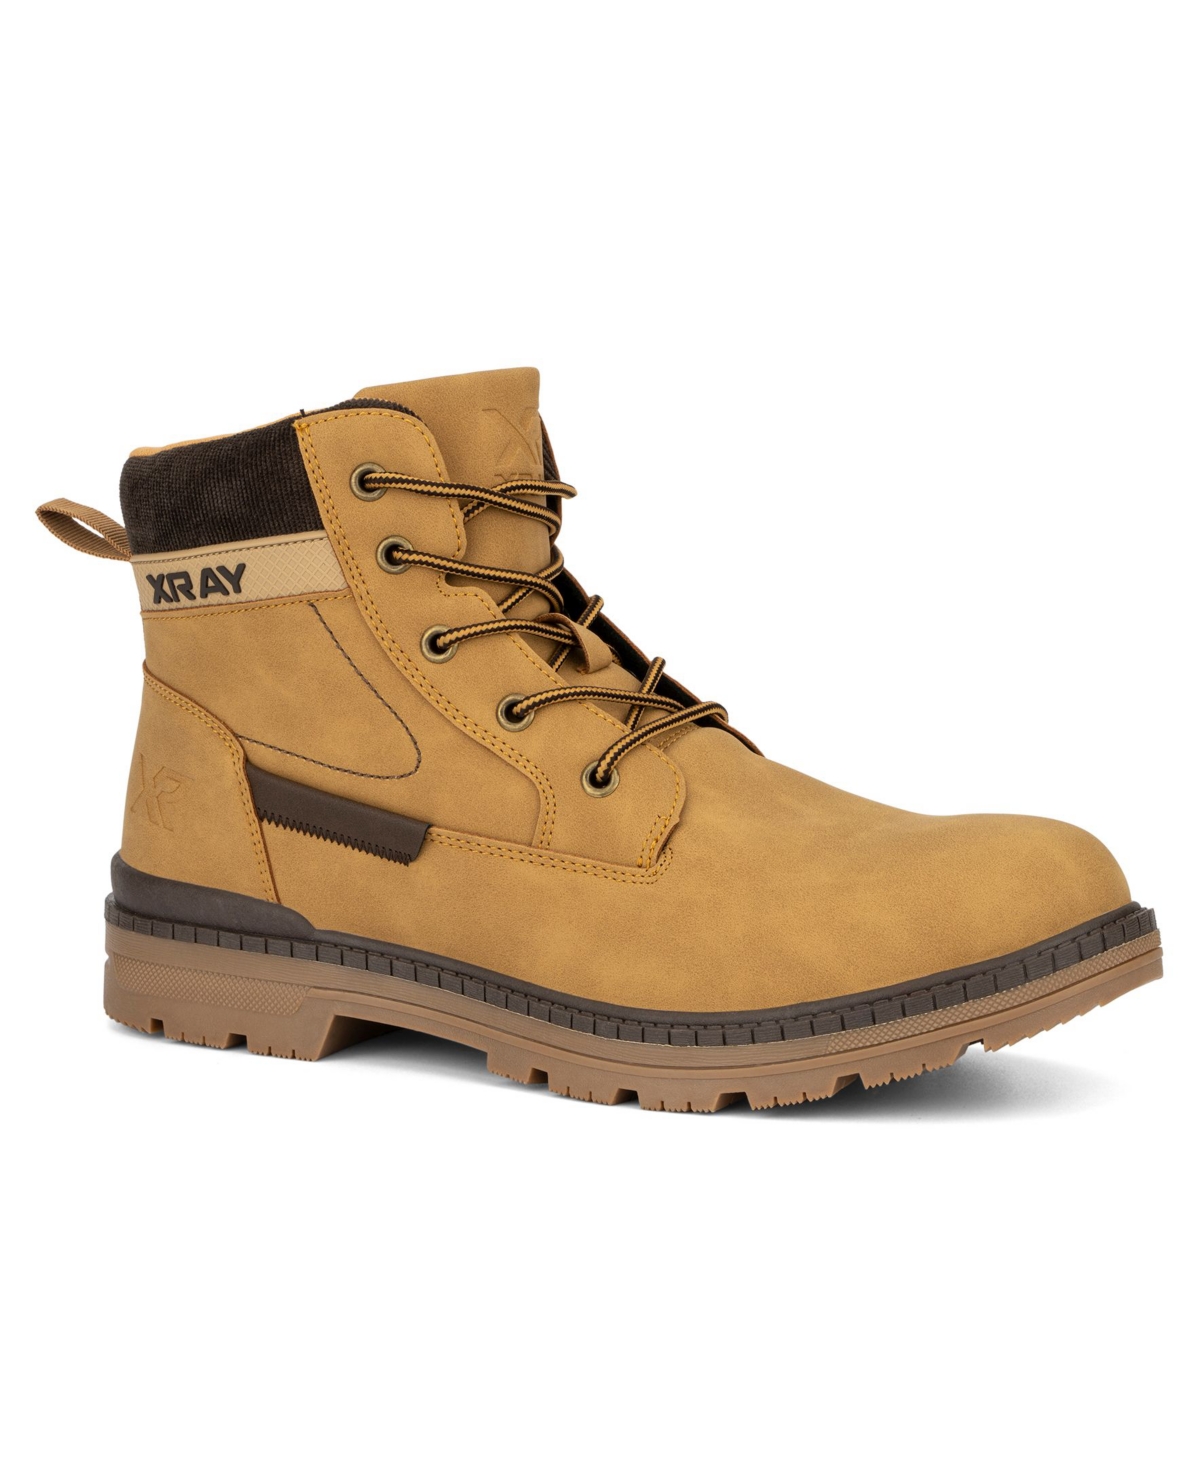 Xray Men's Peak Work Boots - Wheat